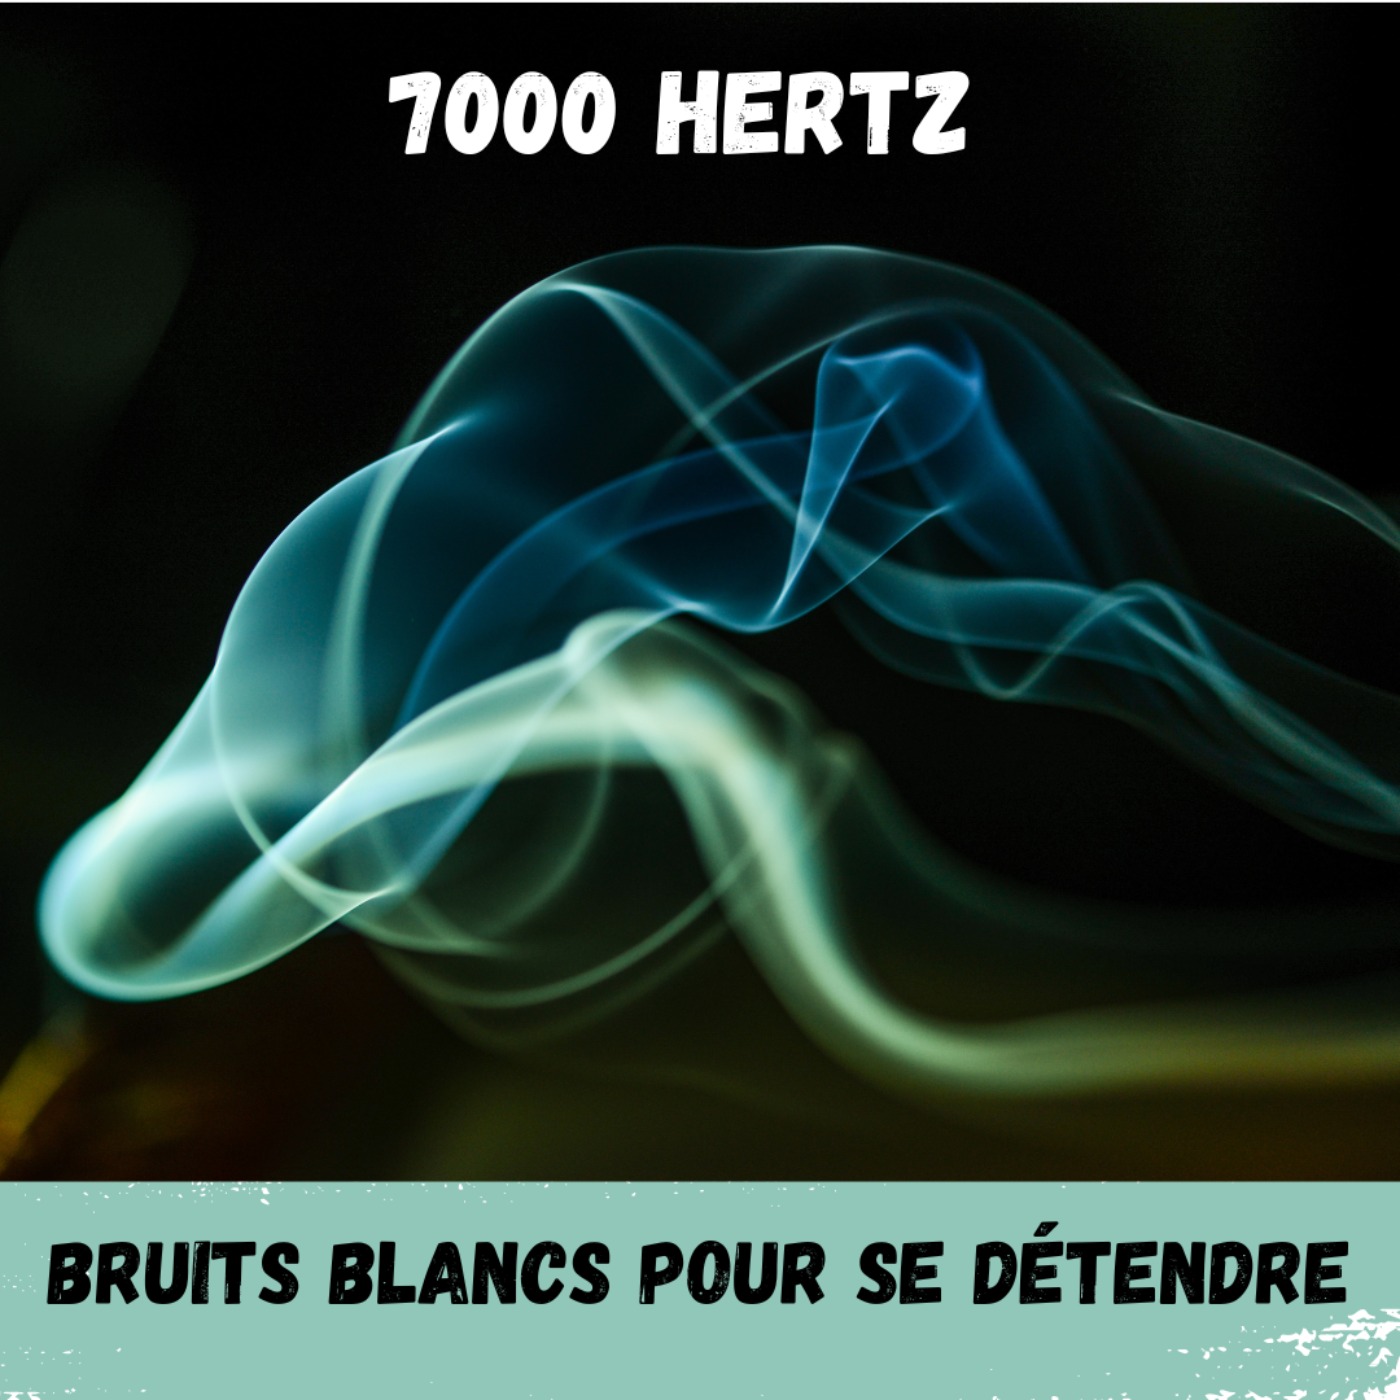 2h - Bruit Blanc 7000 Hertz / White Noise 7000 Hertz